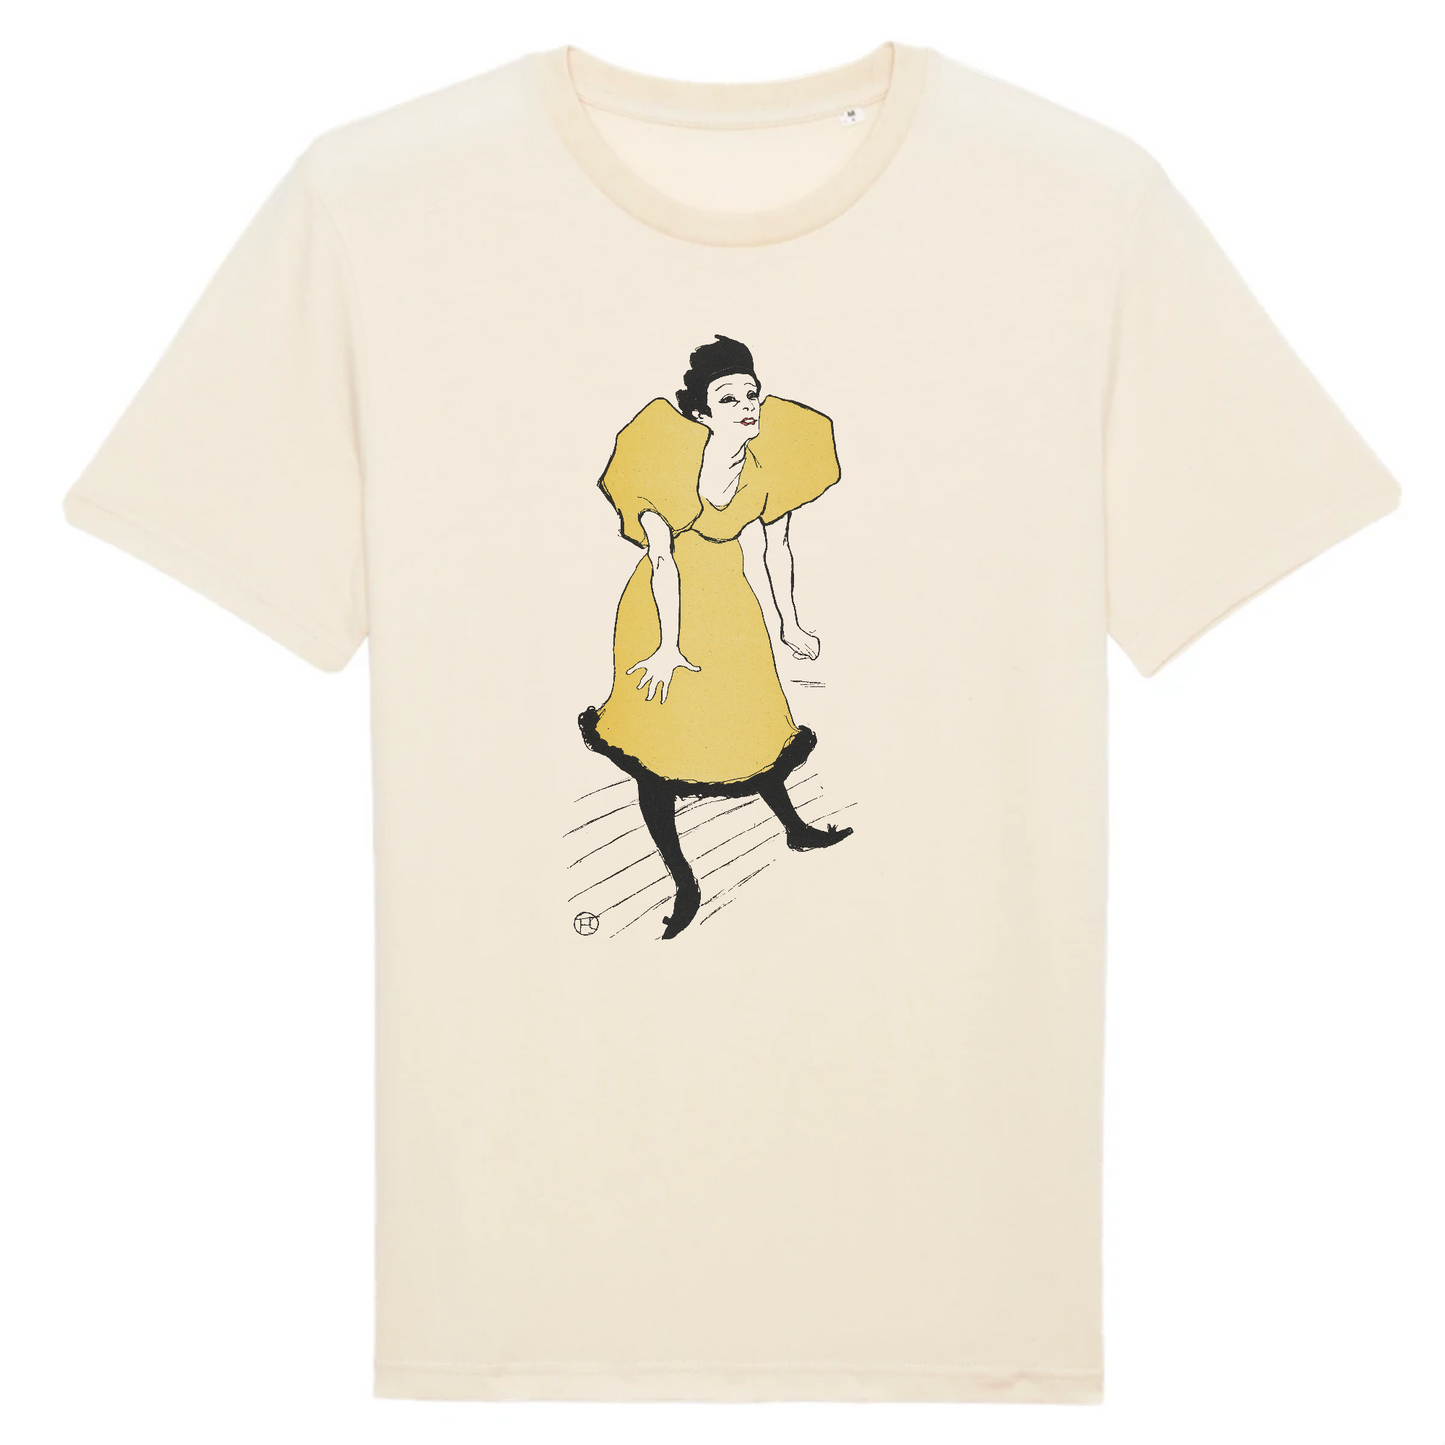 Polaire, d'après Henri de Toulouse-Lautrec, 1895 - T-shirt en coton bio